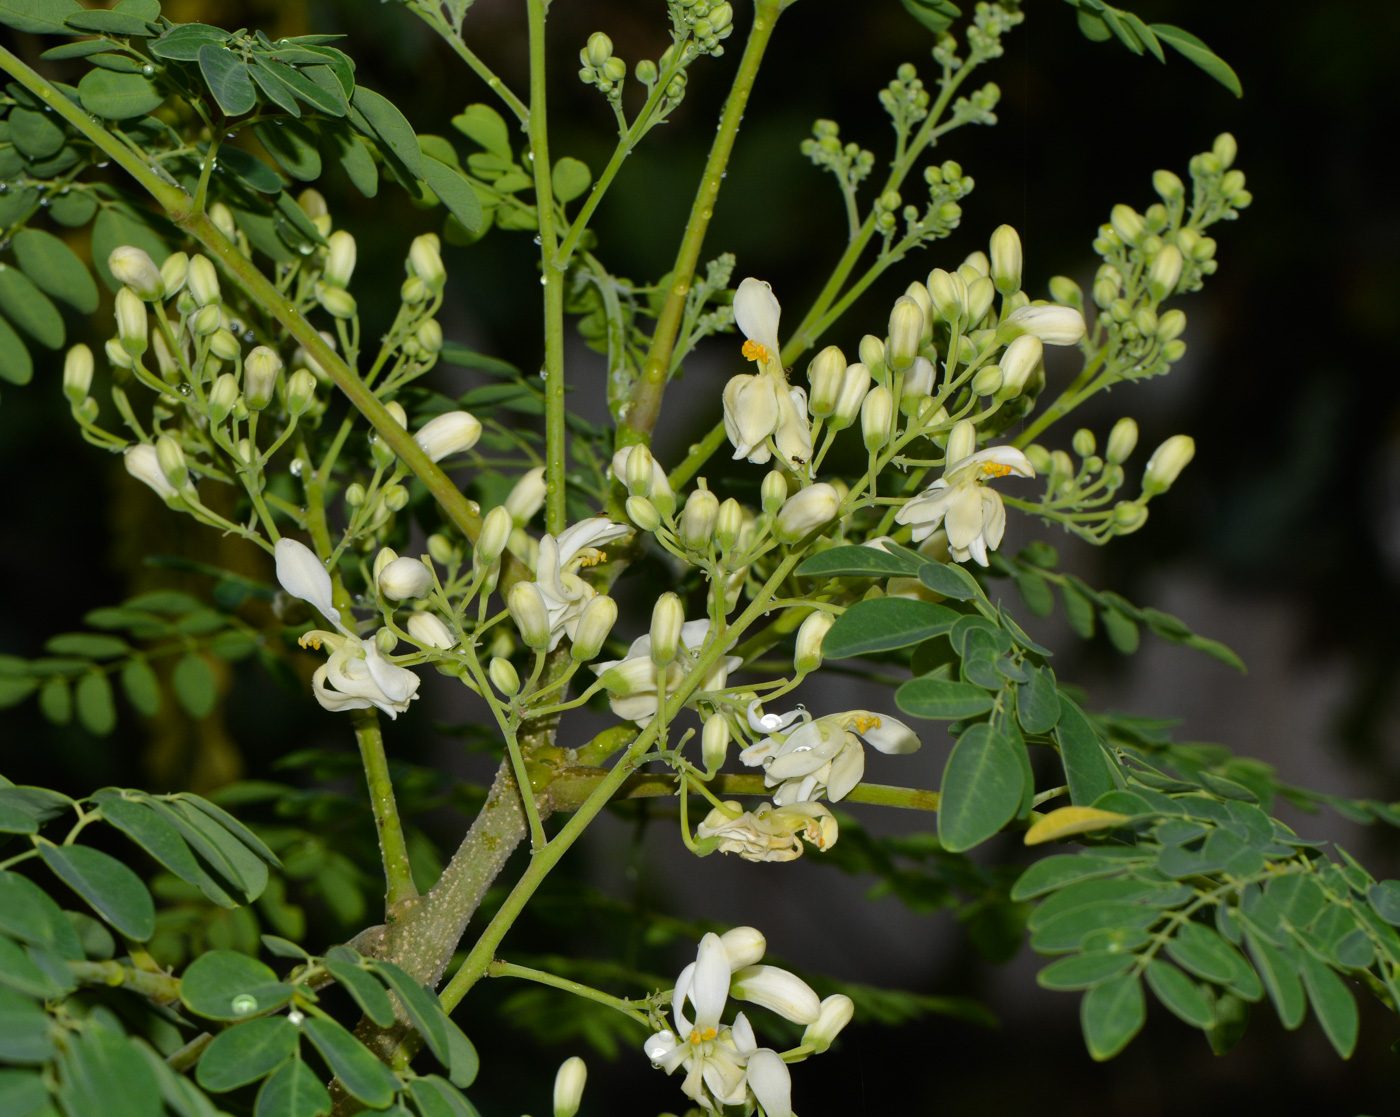 Image of Moringa oleifera specimen.